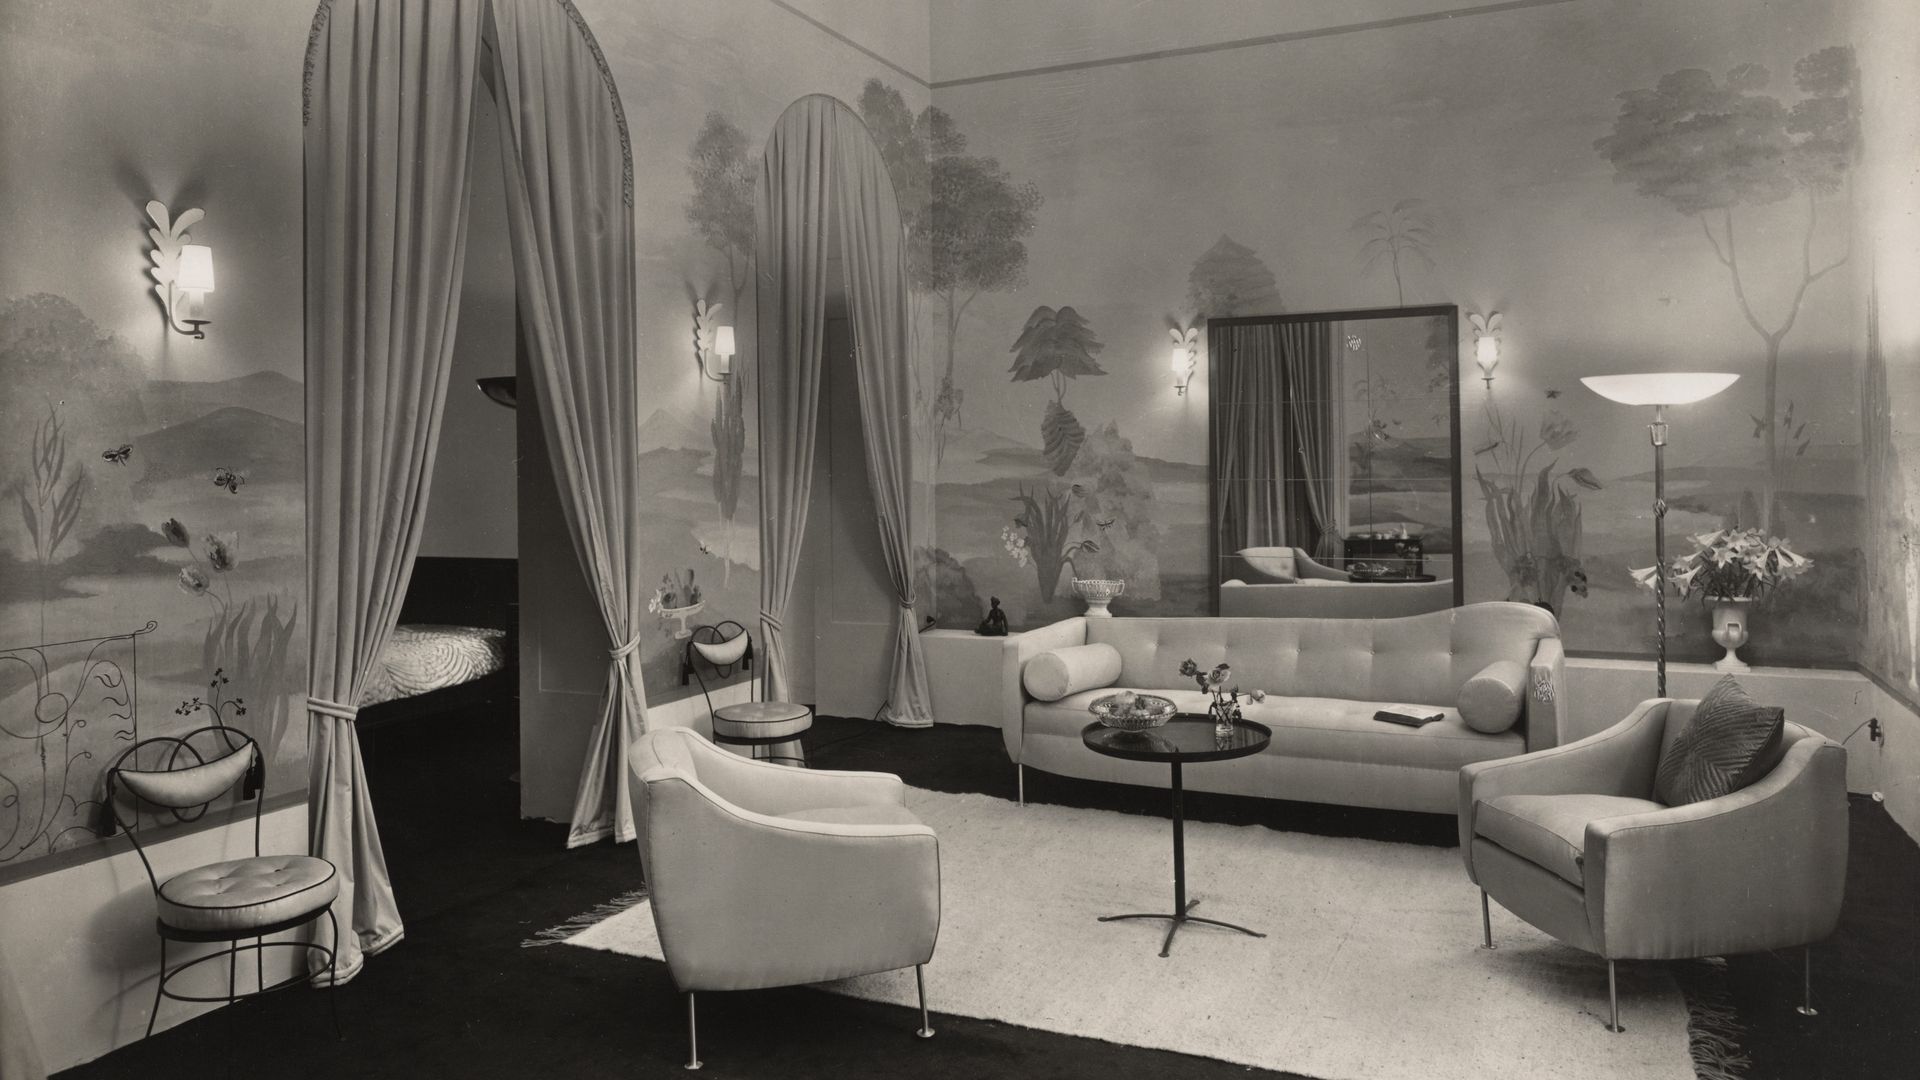 Max Krajewsky, von Ruth Hildegard Geyer-Raack gestalteter Raum der Dame mit angrenzendem Schlafzimmer, Einrichtungshaus „Meisterräume“ Berlin, um 1936